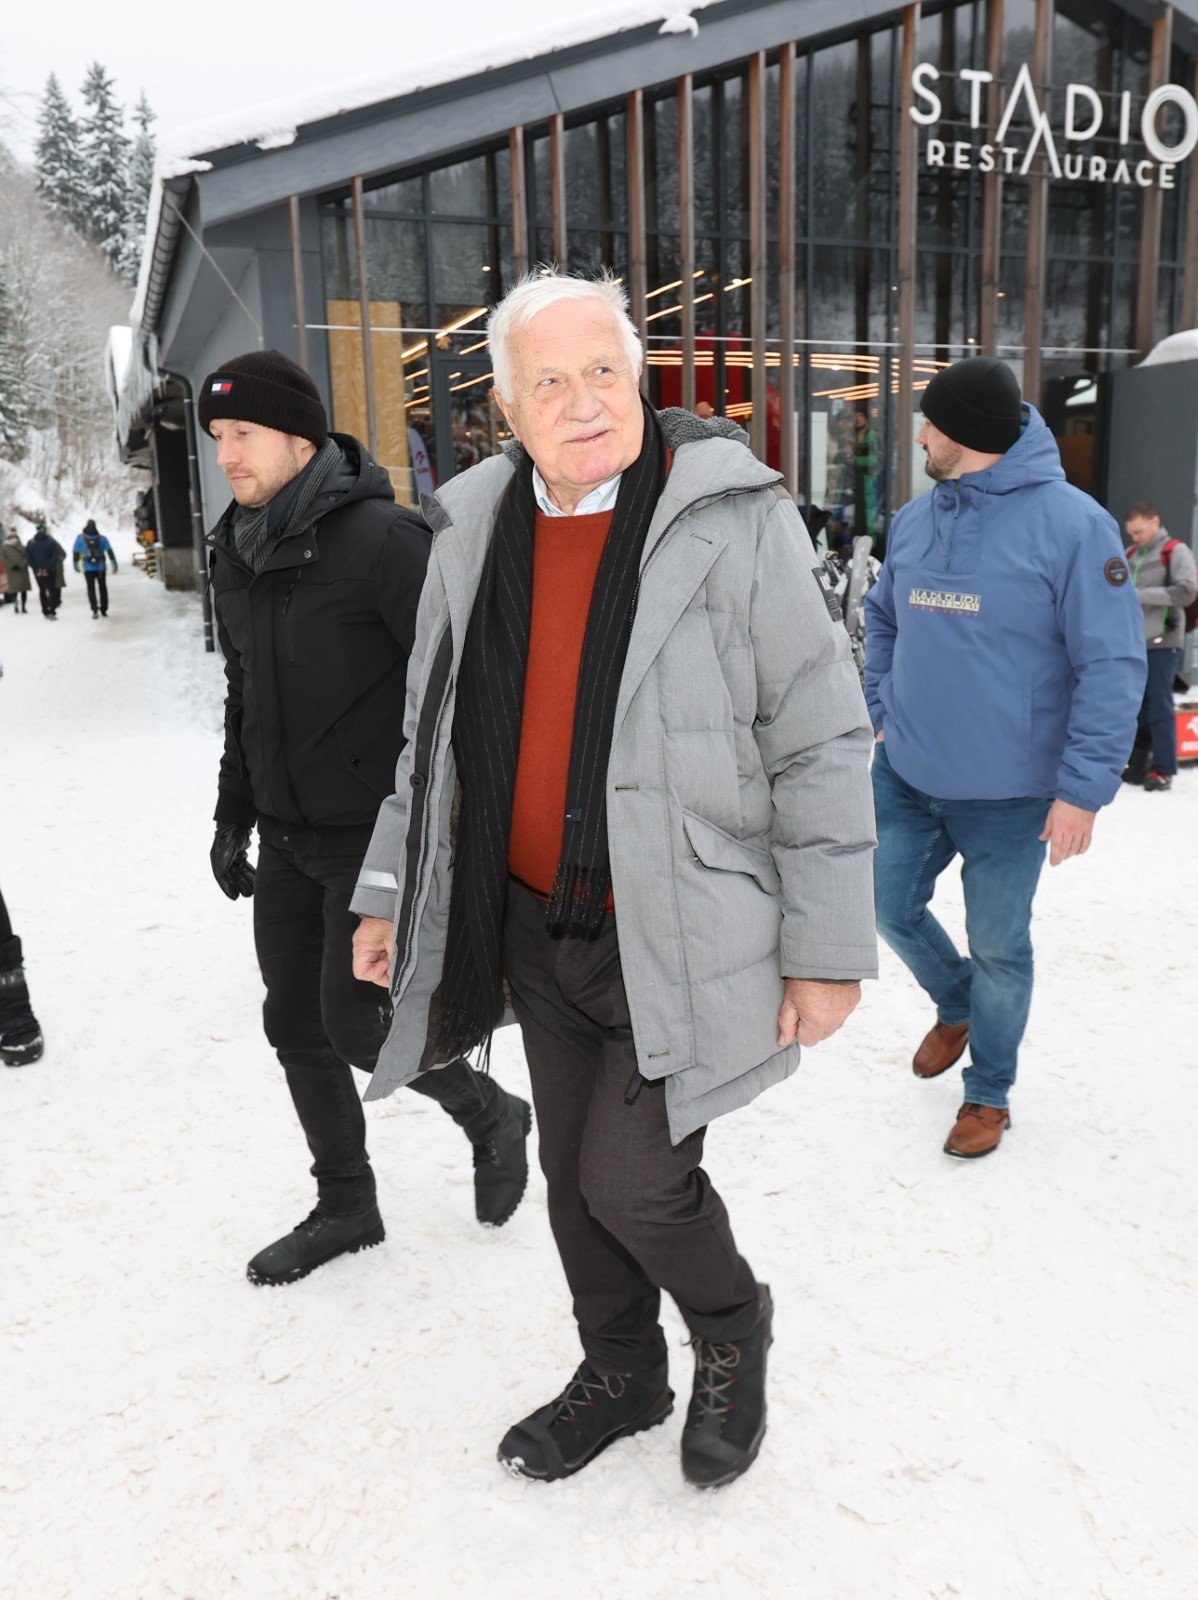 Bývalý prezident Václav Klaus ve Špindlerově Mlýně. (9.12.2023)